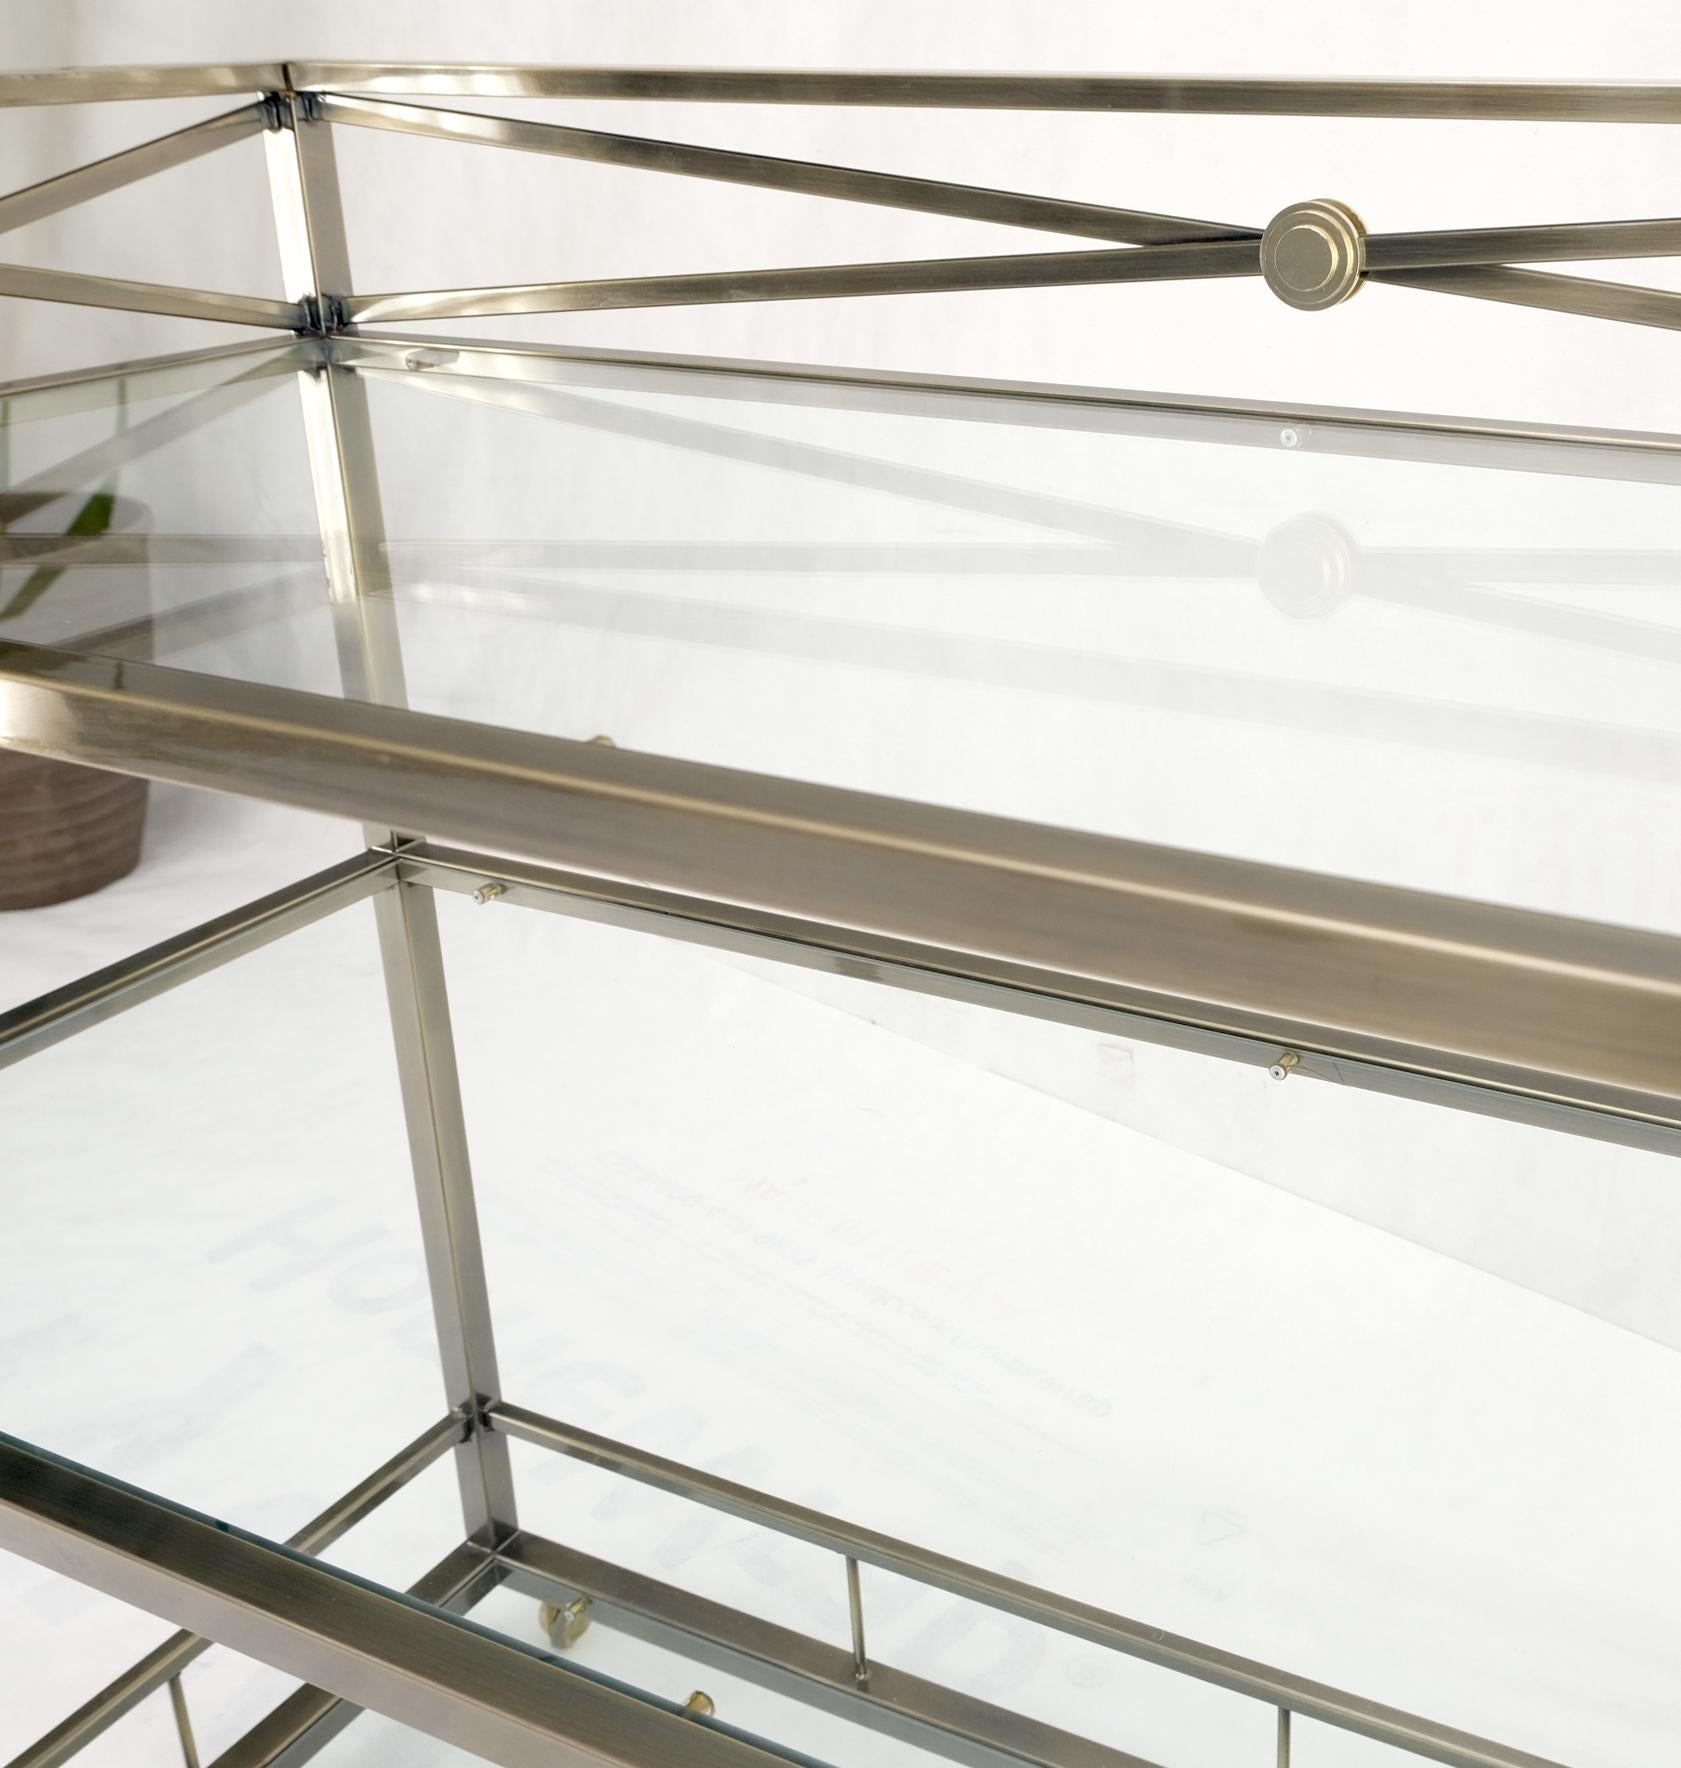 Brass Finish Glass Shelves 3 Tier Serving Bar Serving Cart W/ Gallery Mint! 13